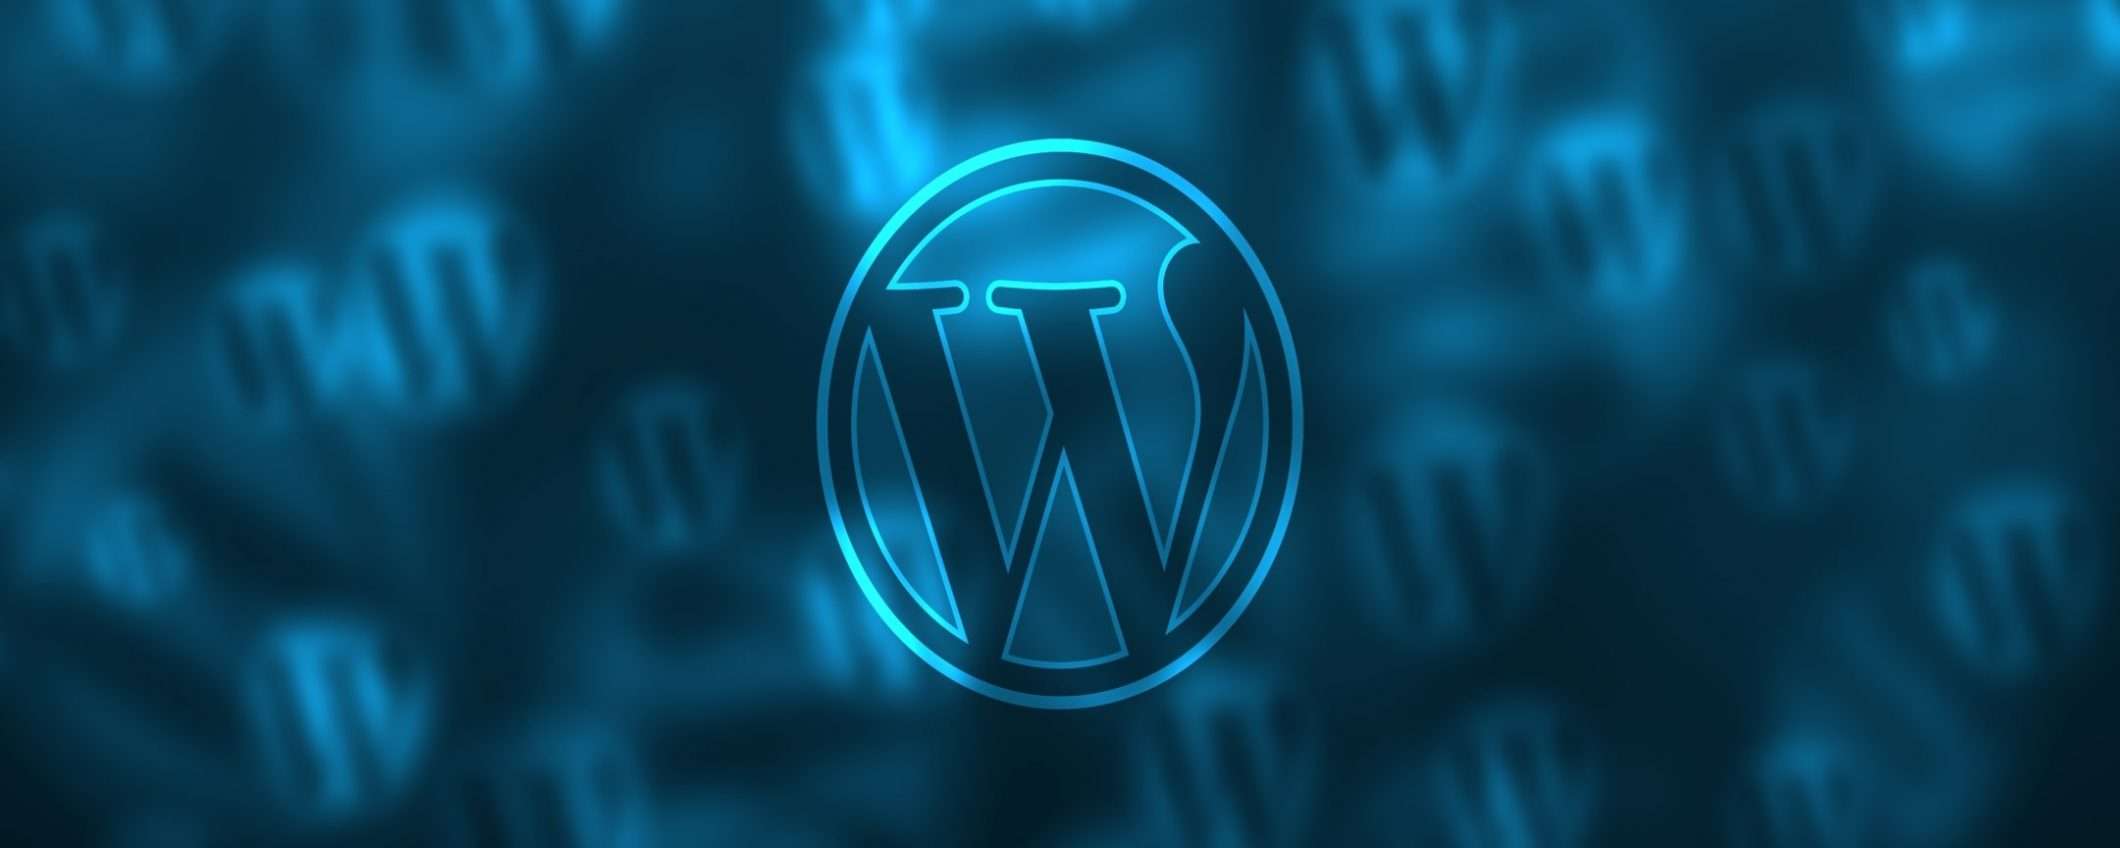 Udemy: un corso per creare siti Wordpress a 18,99 euro